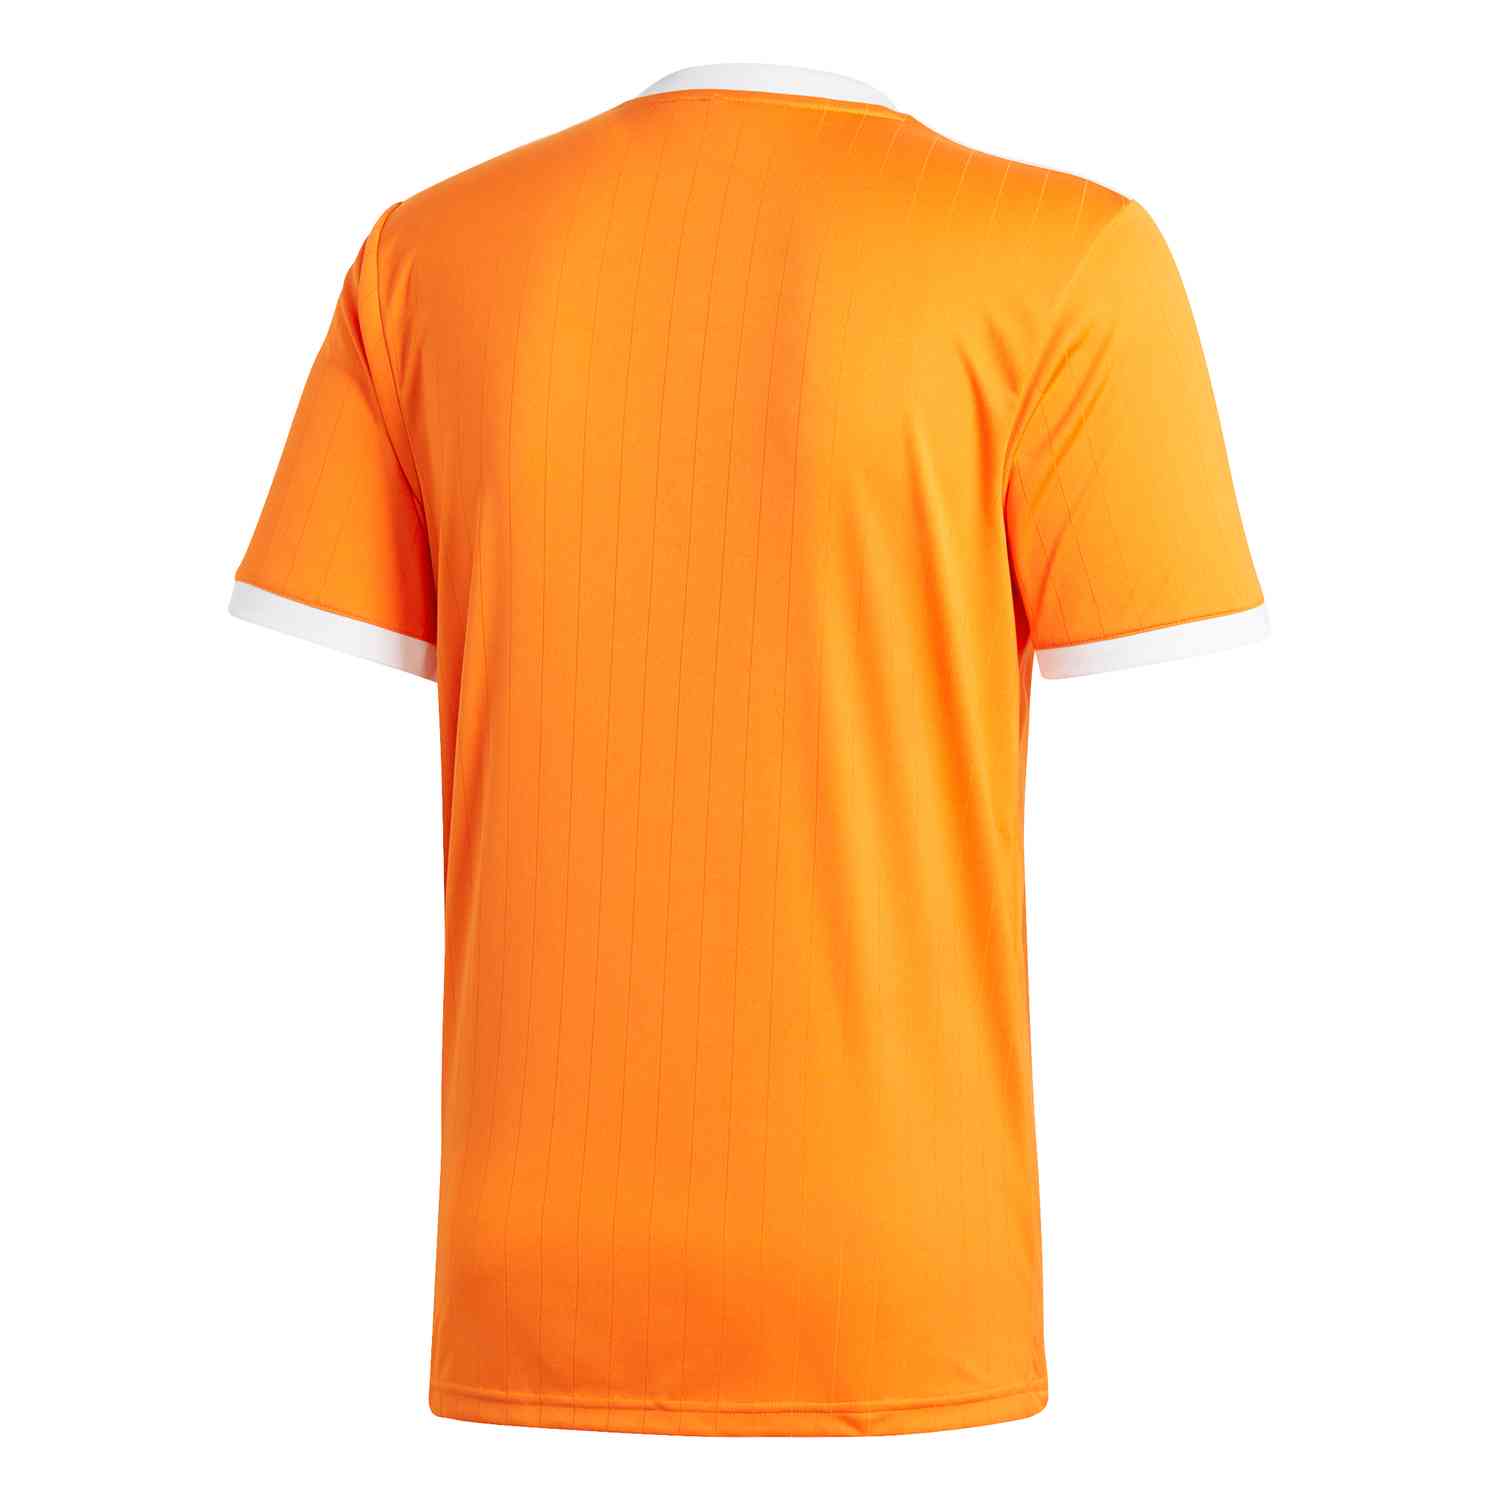 adidas Tabela 18 Jersey - Orange/White - SoccerPro